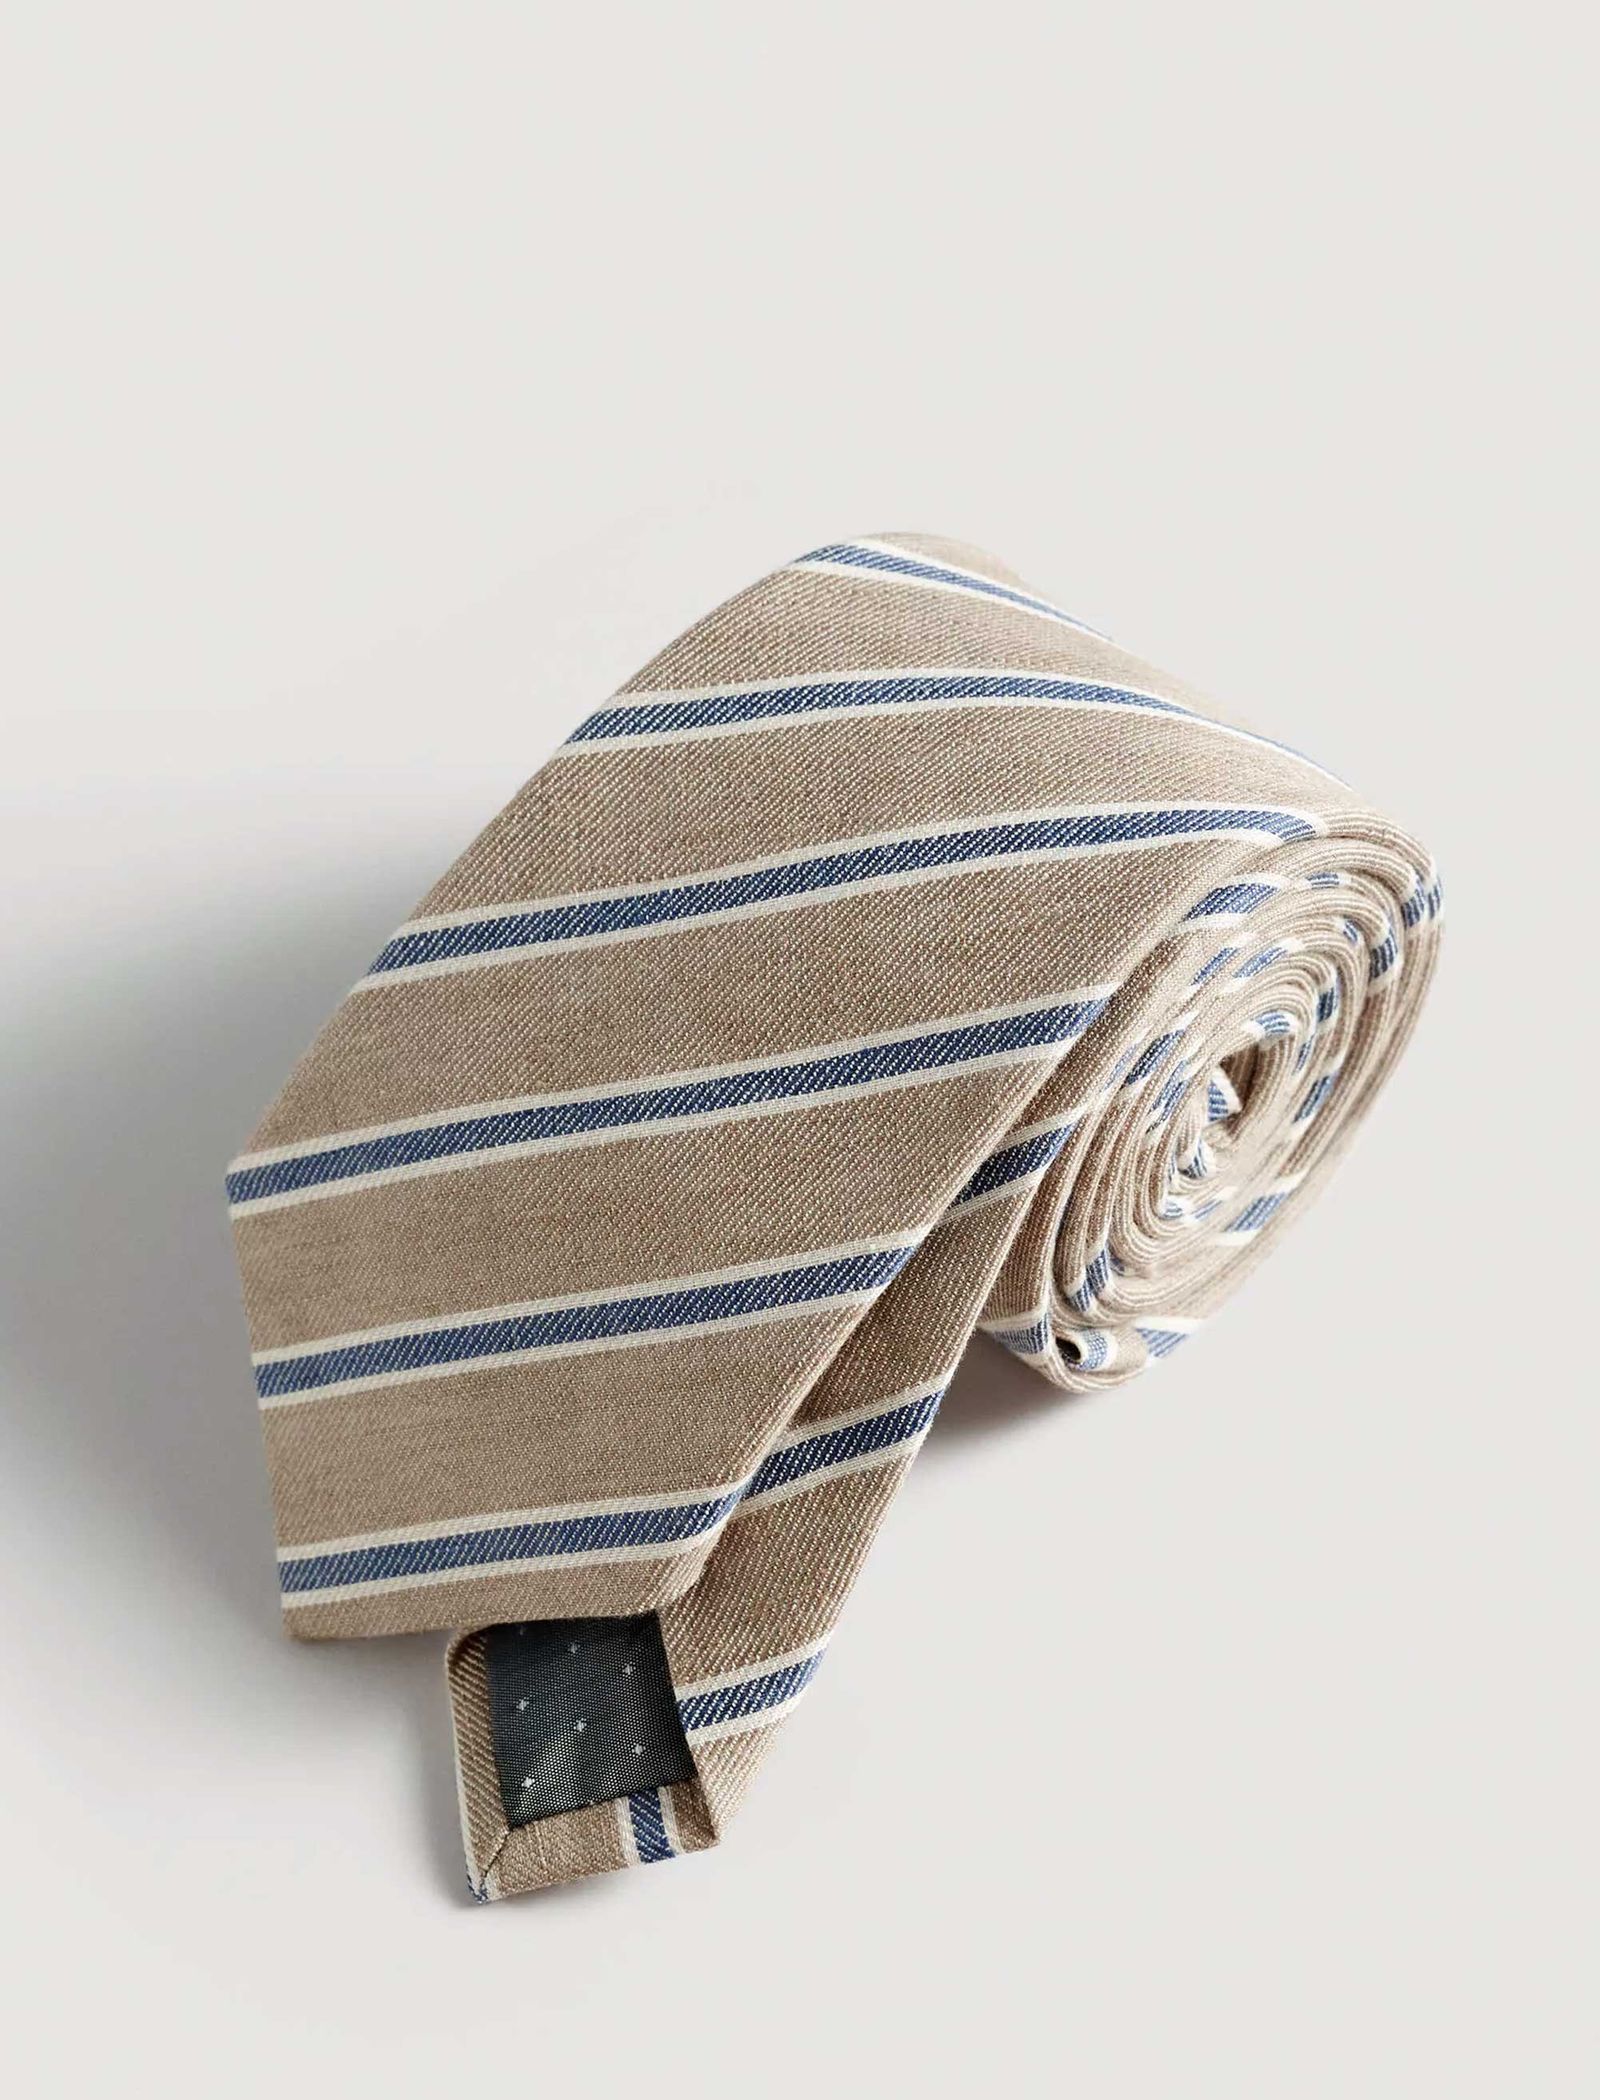 کراوات طرح دار مردانه - مانگو تک سایز - آبي و بژ - 3